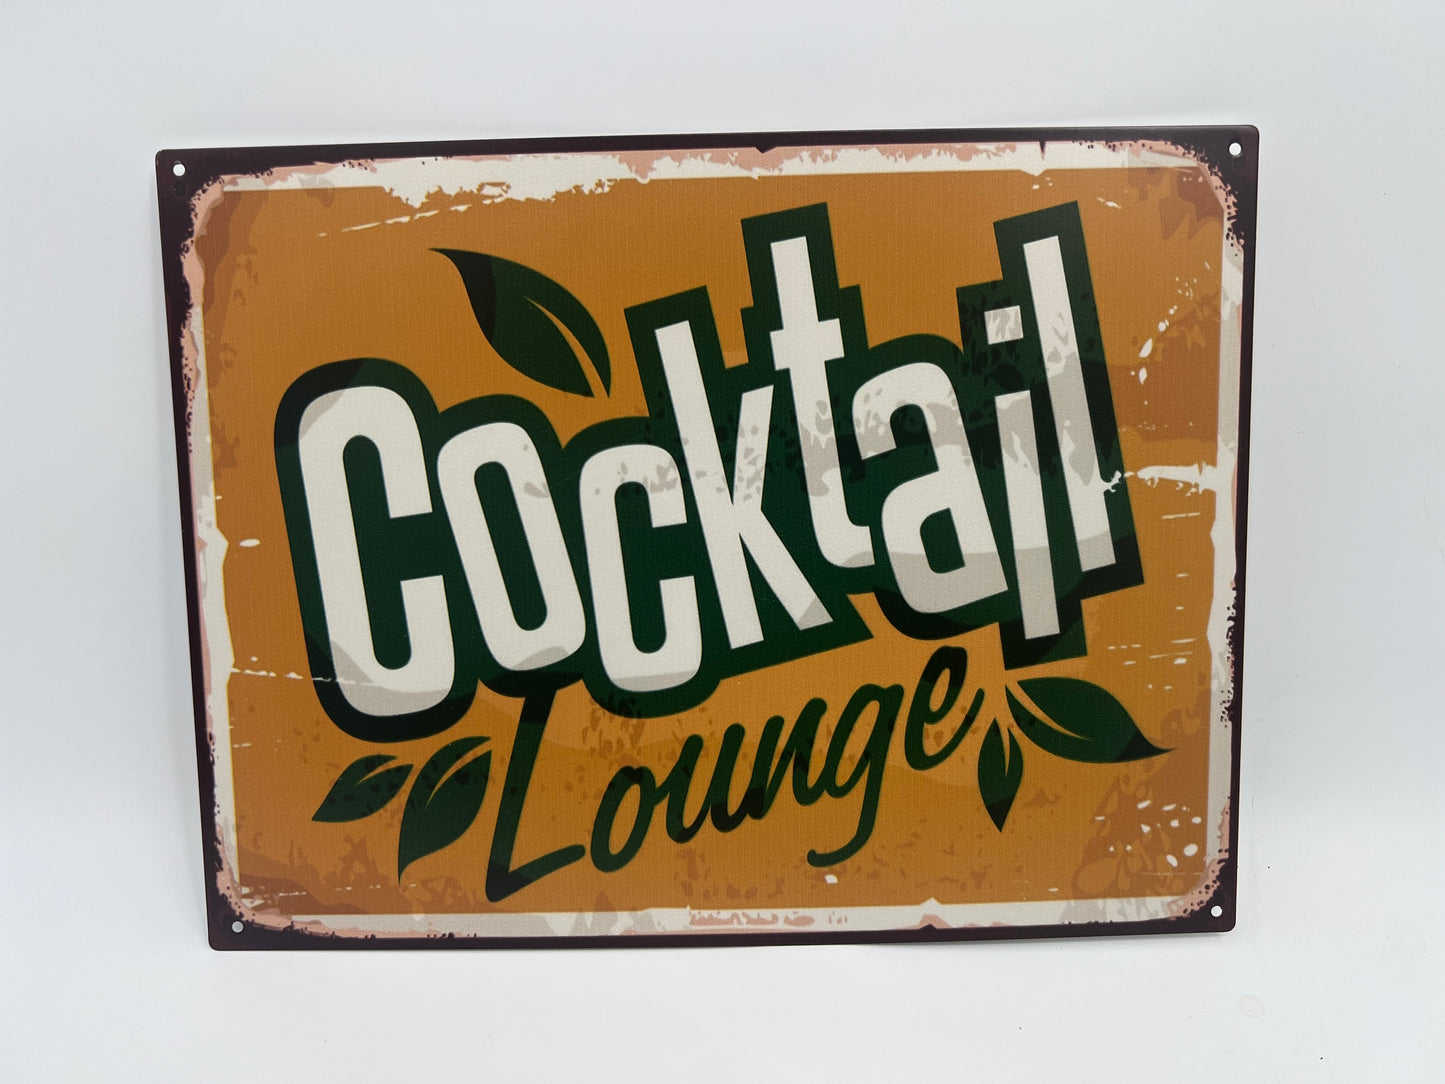 Blechschild "COCKTAIL Lounge"